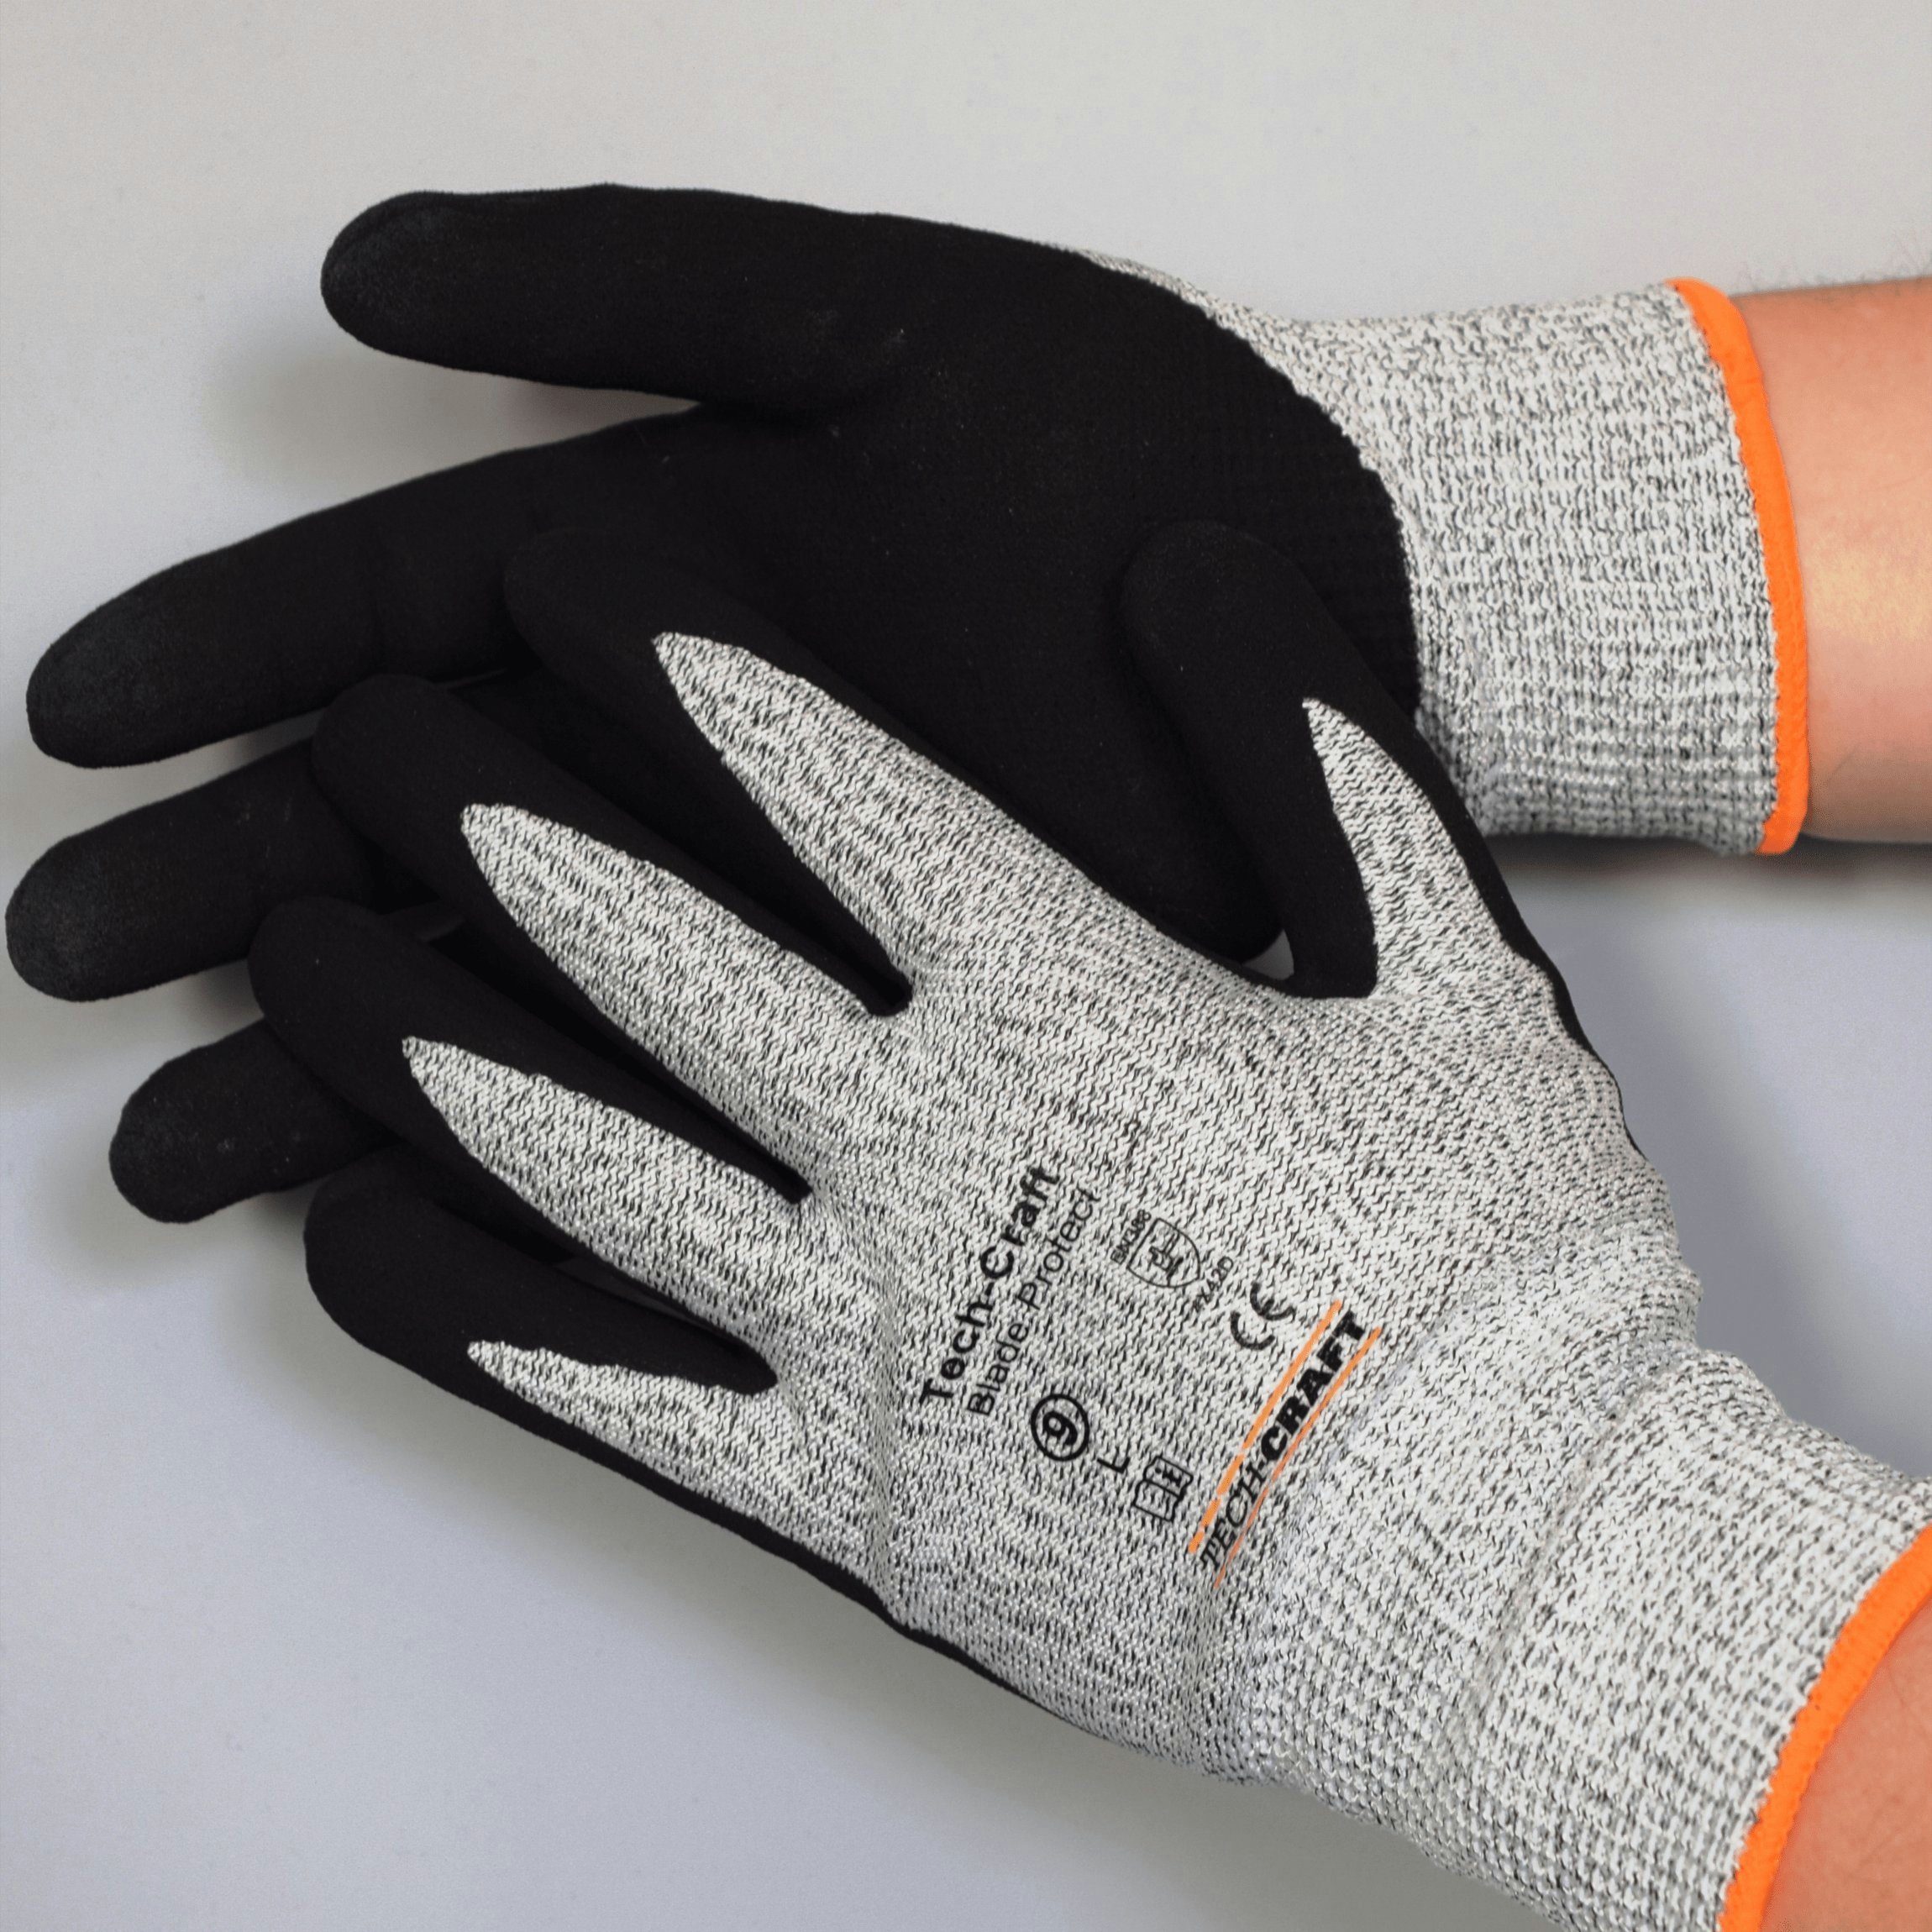 TECH-CRAFT Schnittschutzhandschuhe Schnittschutzhandschuh (10er 10 Paar Protect Blade Gr.10 Touchscreen-Finger Set) 3 x